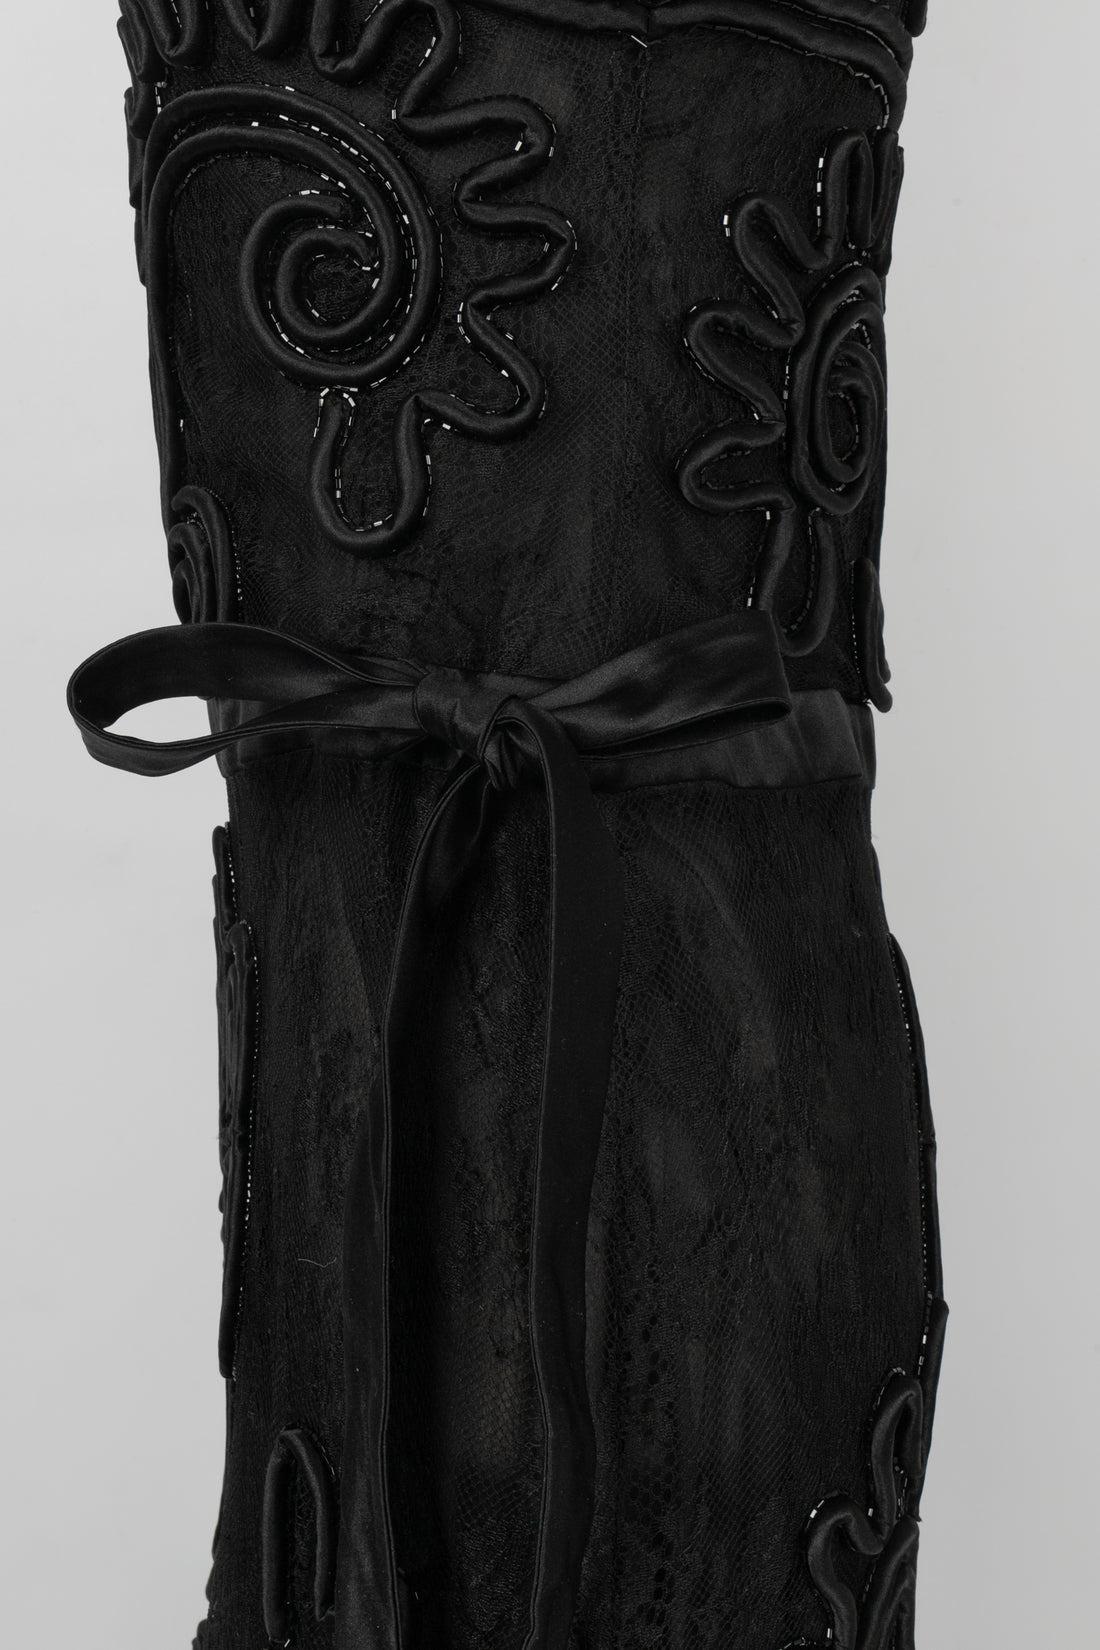 Valentino Black Lace Dress, circa 2010 For Sale 1